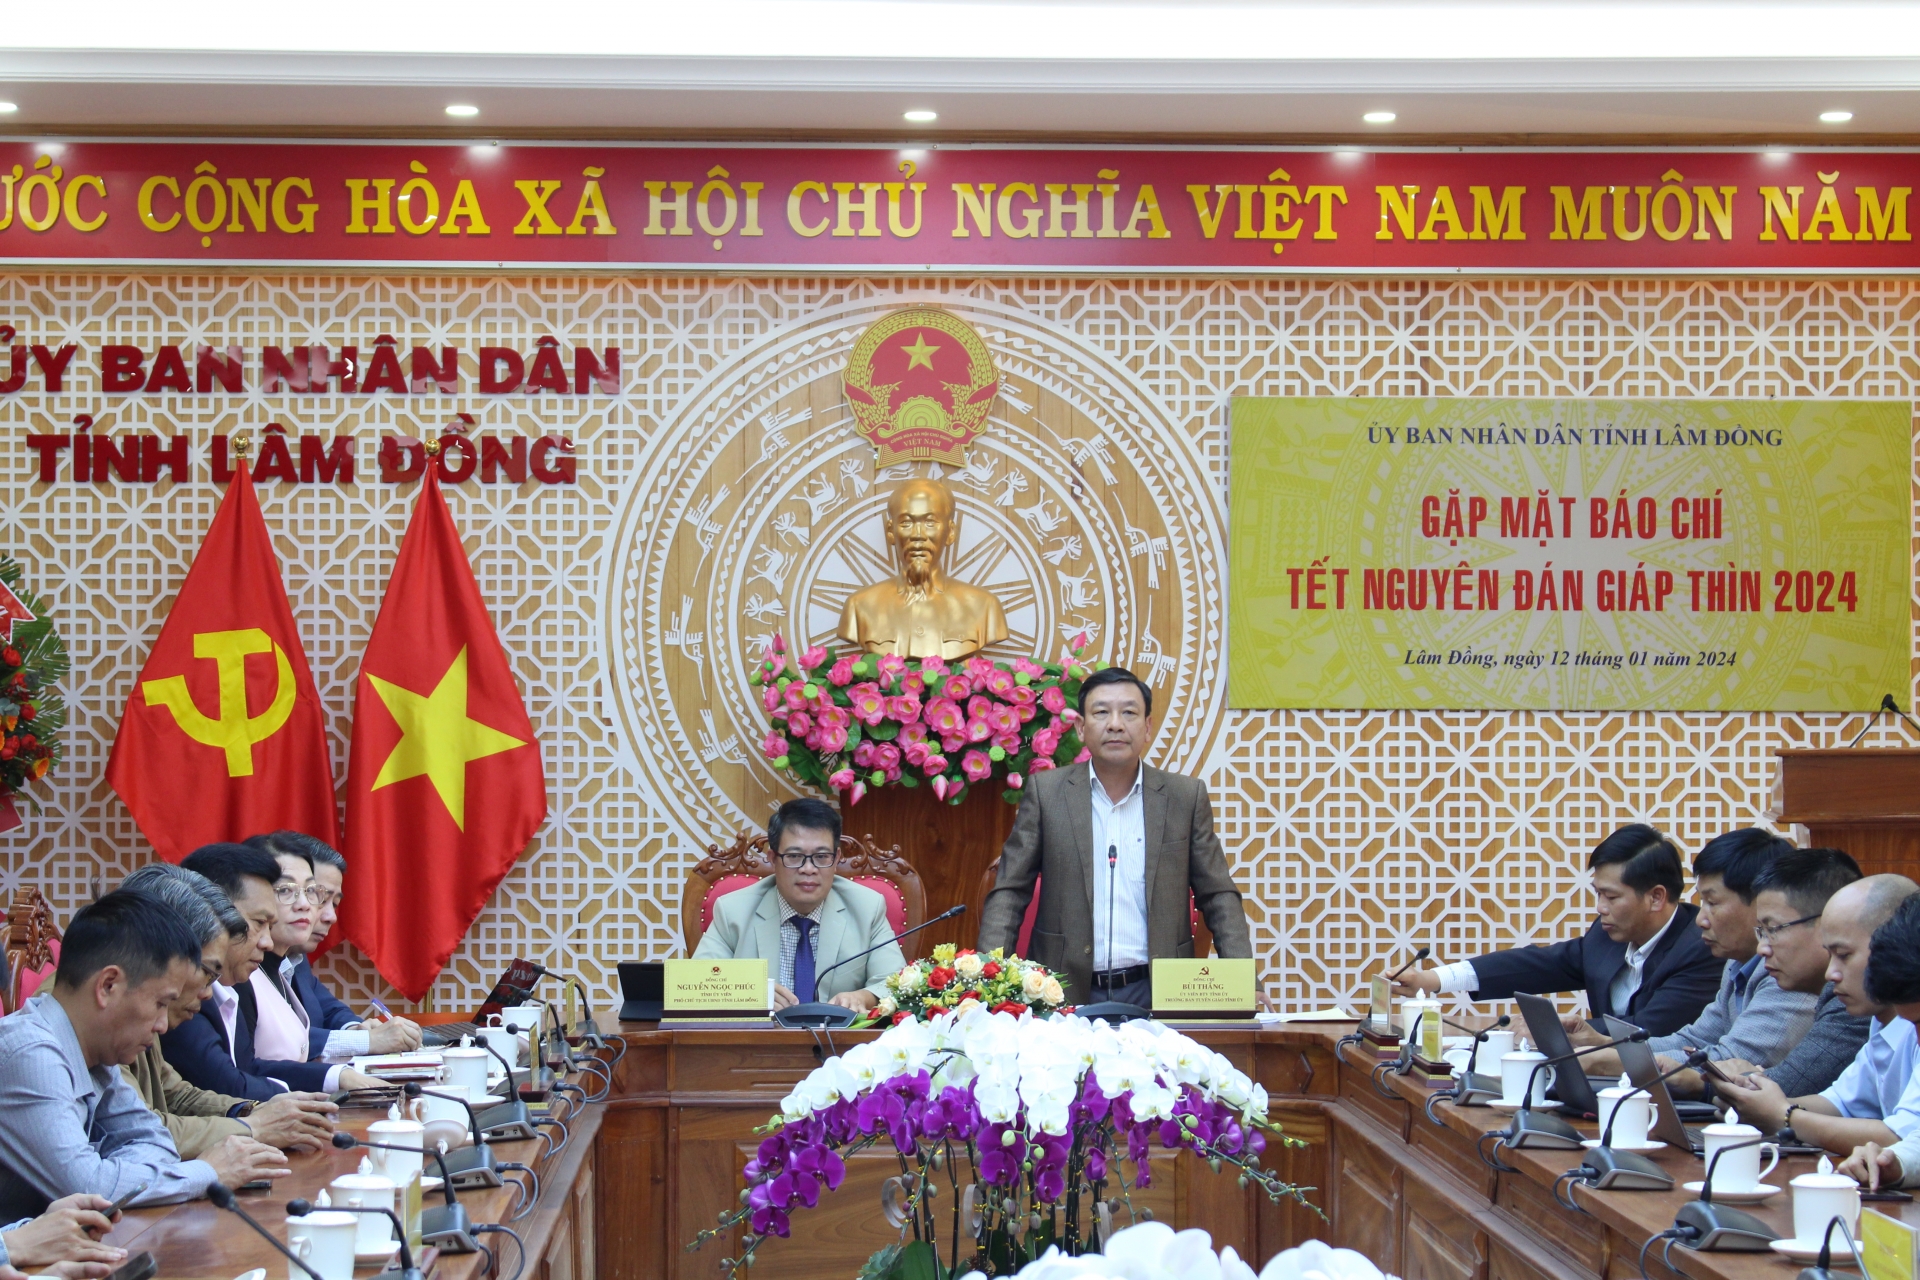 Đồng chí Bùi Thắng- TUV, Trưởng ban Tuyên giáo tỉnh Lâm Đồng phát biểu tại buổi gặp mặt